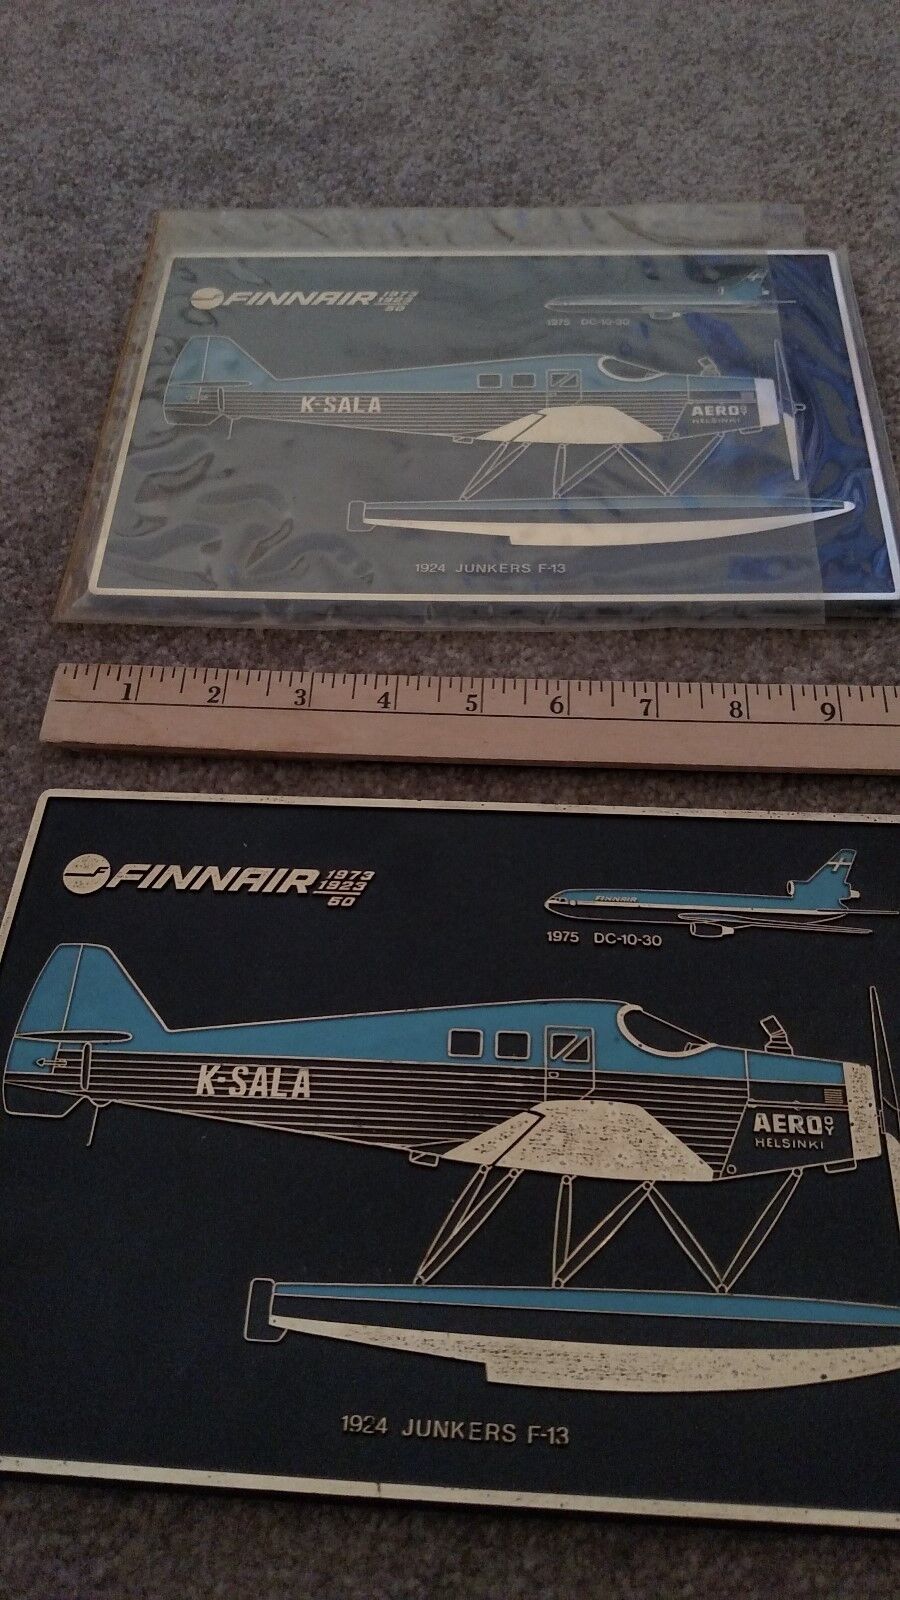 TWO Finnair commemorative plaques - new, unique, McDonnell-Douglas  promo item